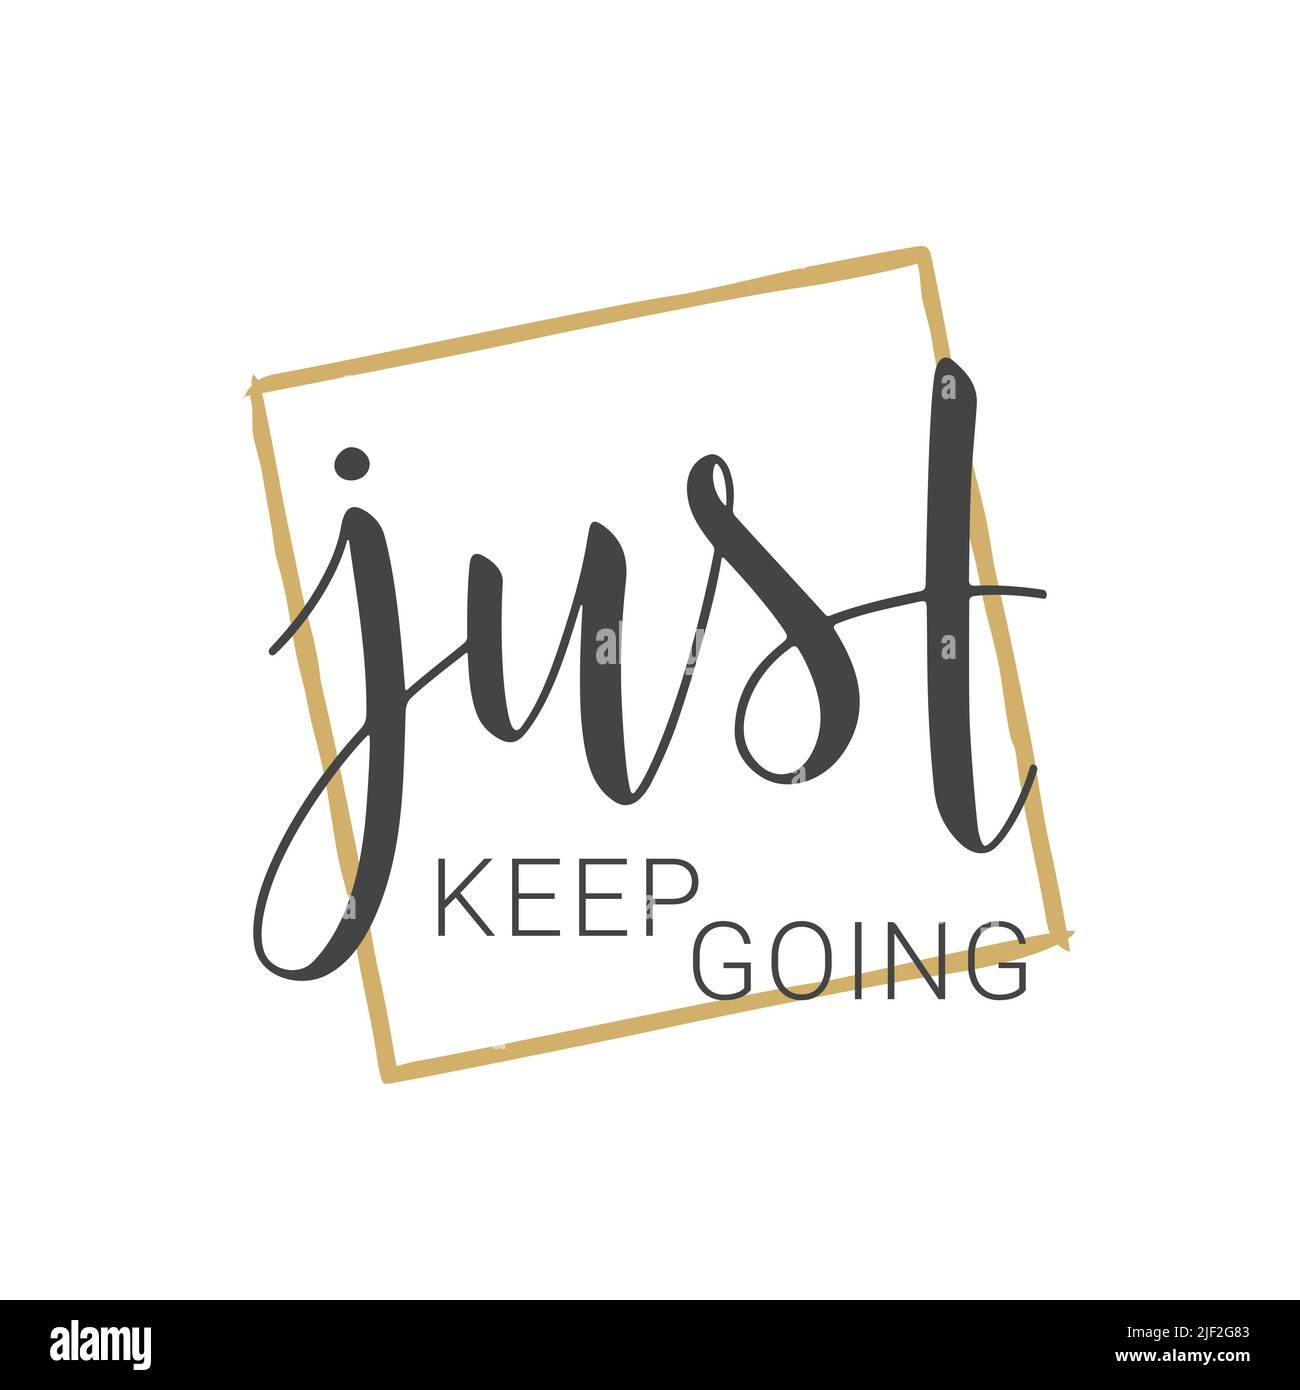 Vektorgrafik. Handgeschriebene Schriftzüge von Just Keep Going. Vorlage für Postkarte, Poster, Aufkleber, Print oder Webprodukt. Stock Vektor